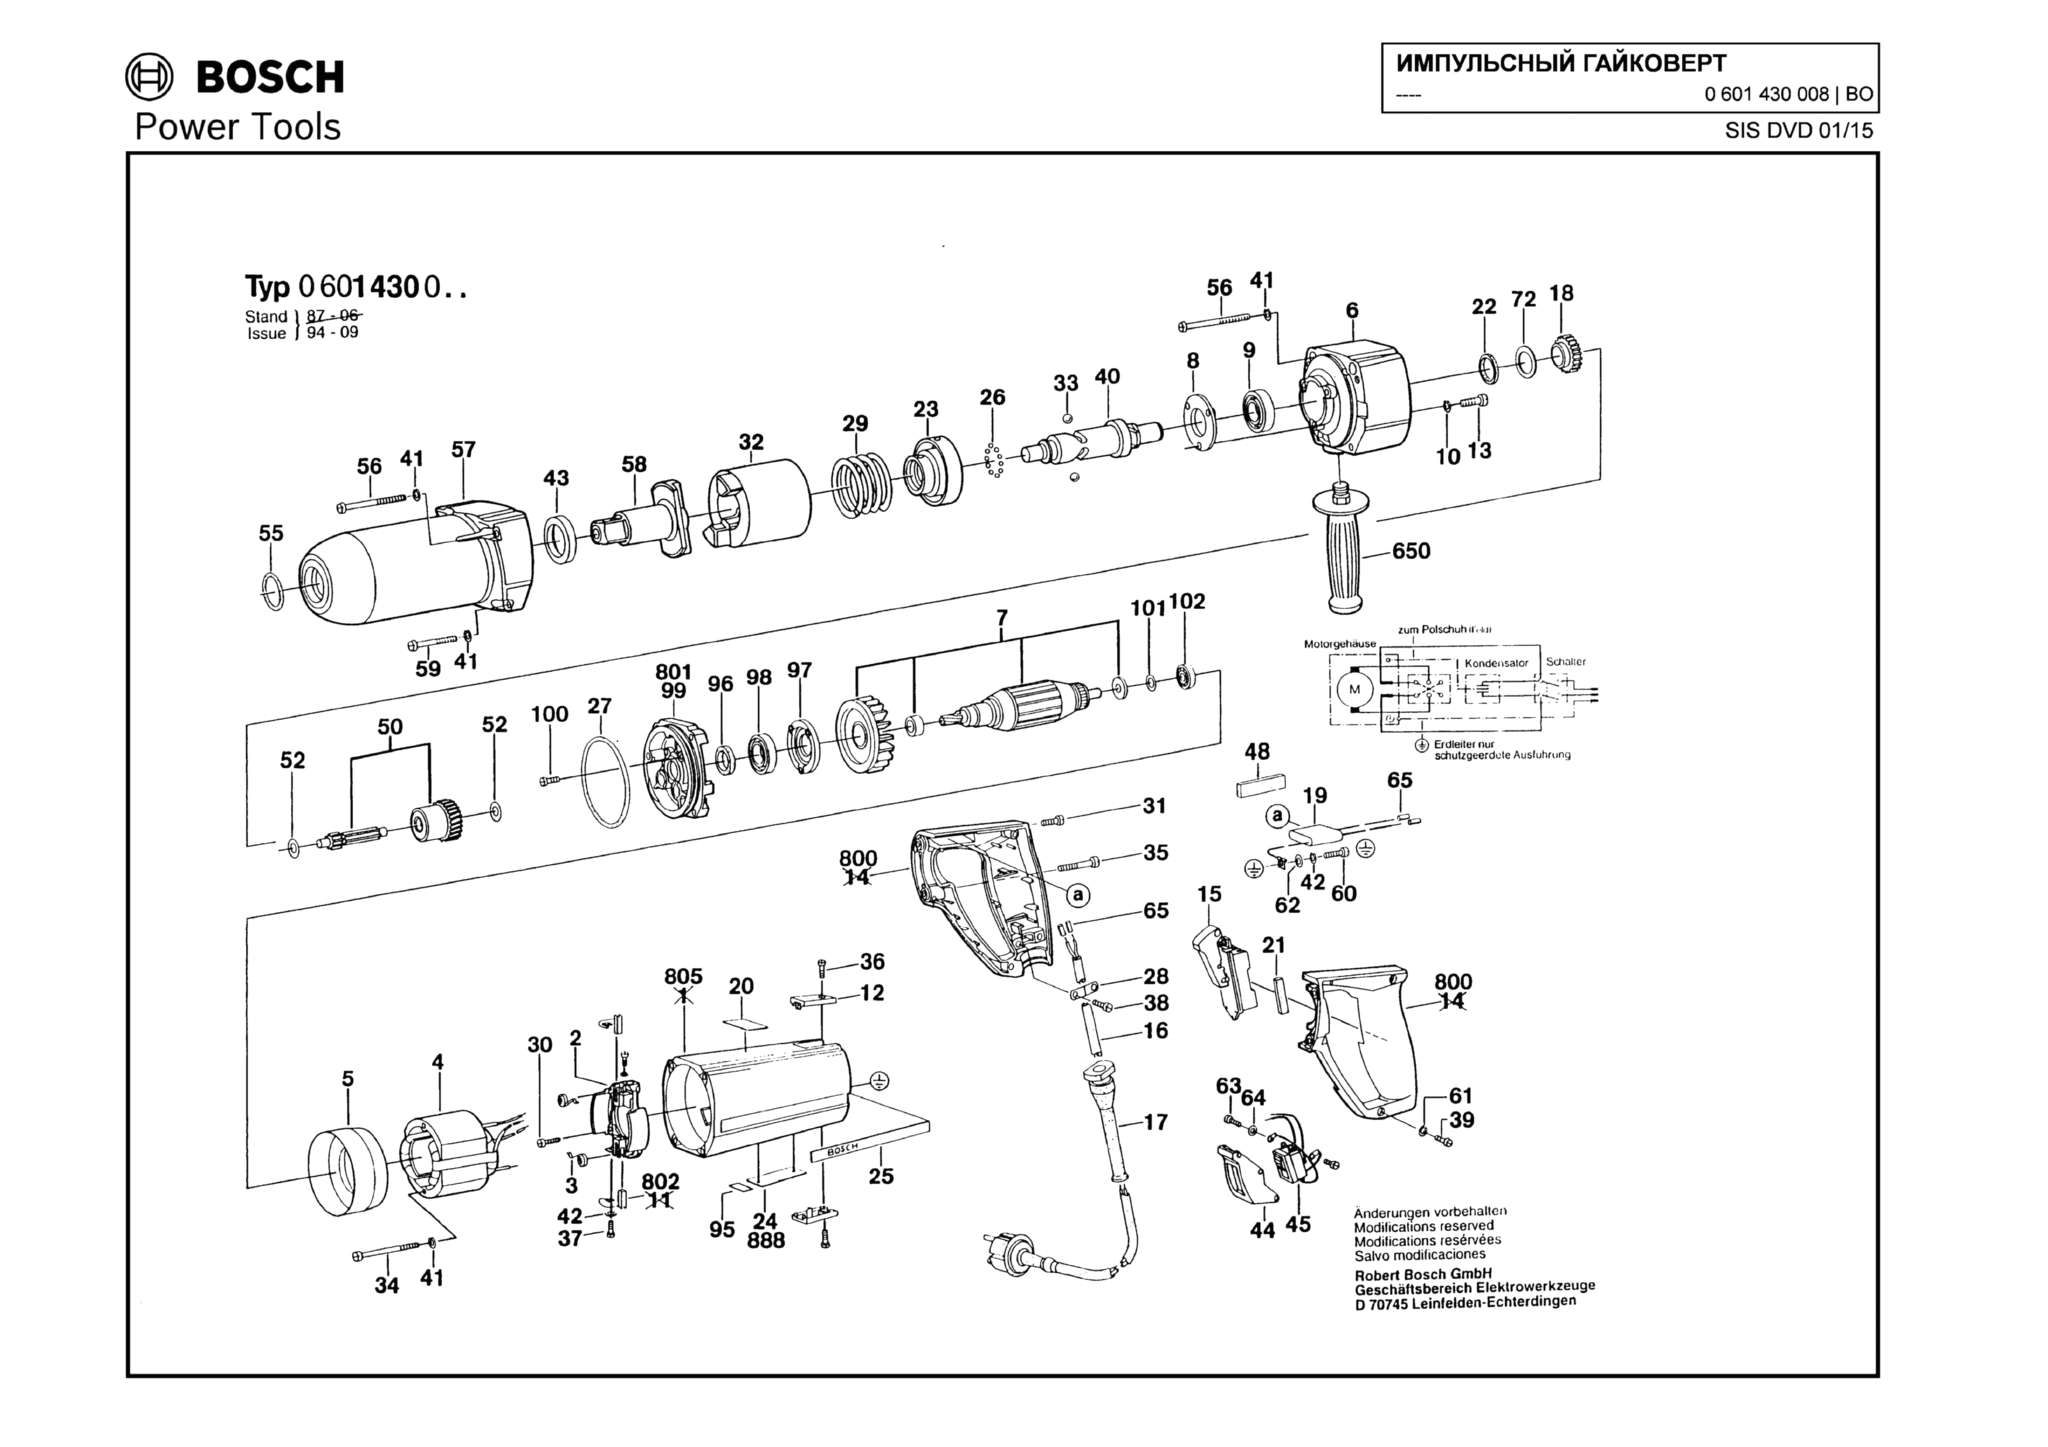 Запчасти, схема и деталировка Bosch (ТИП 0601430008)